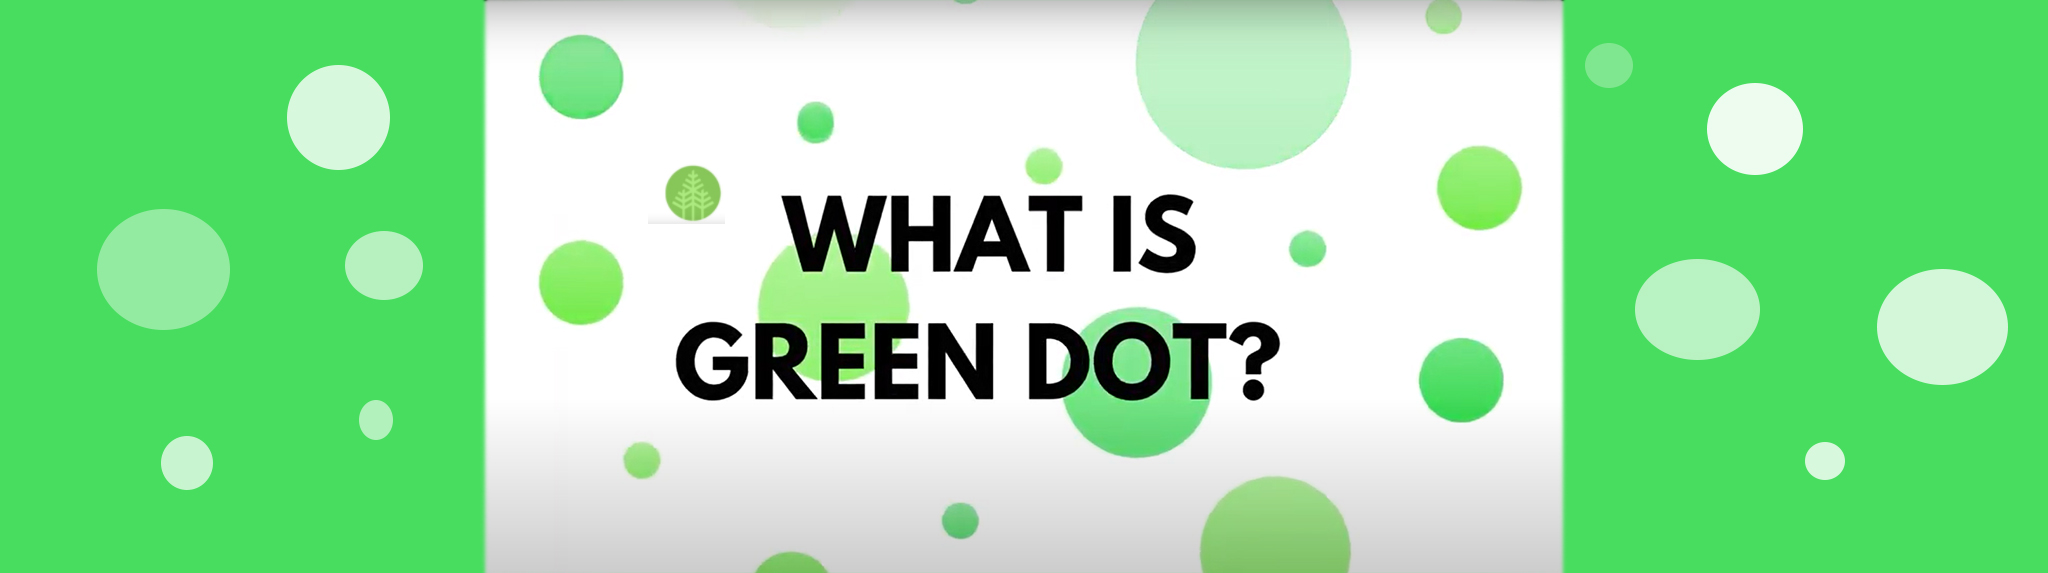 Green Dot training banner